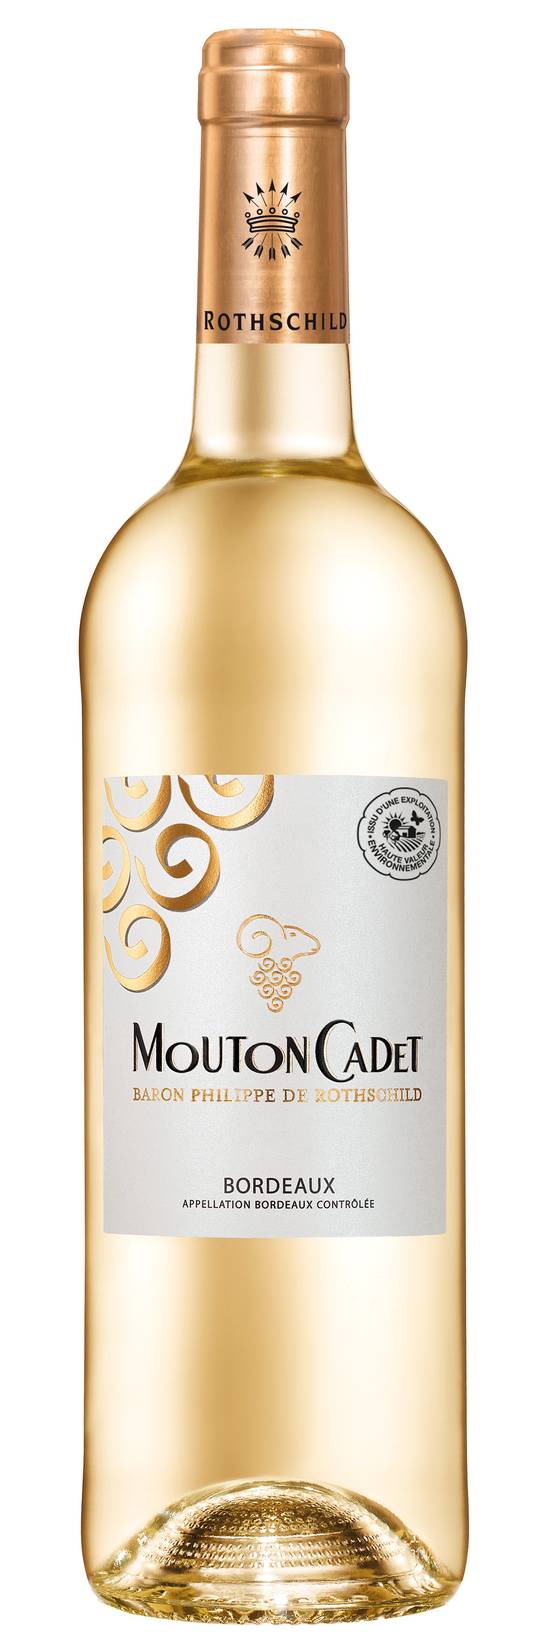 Mouton Cadet - Vin Bordeaux blanc 2021 (750ml)